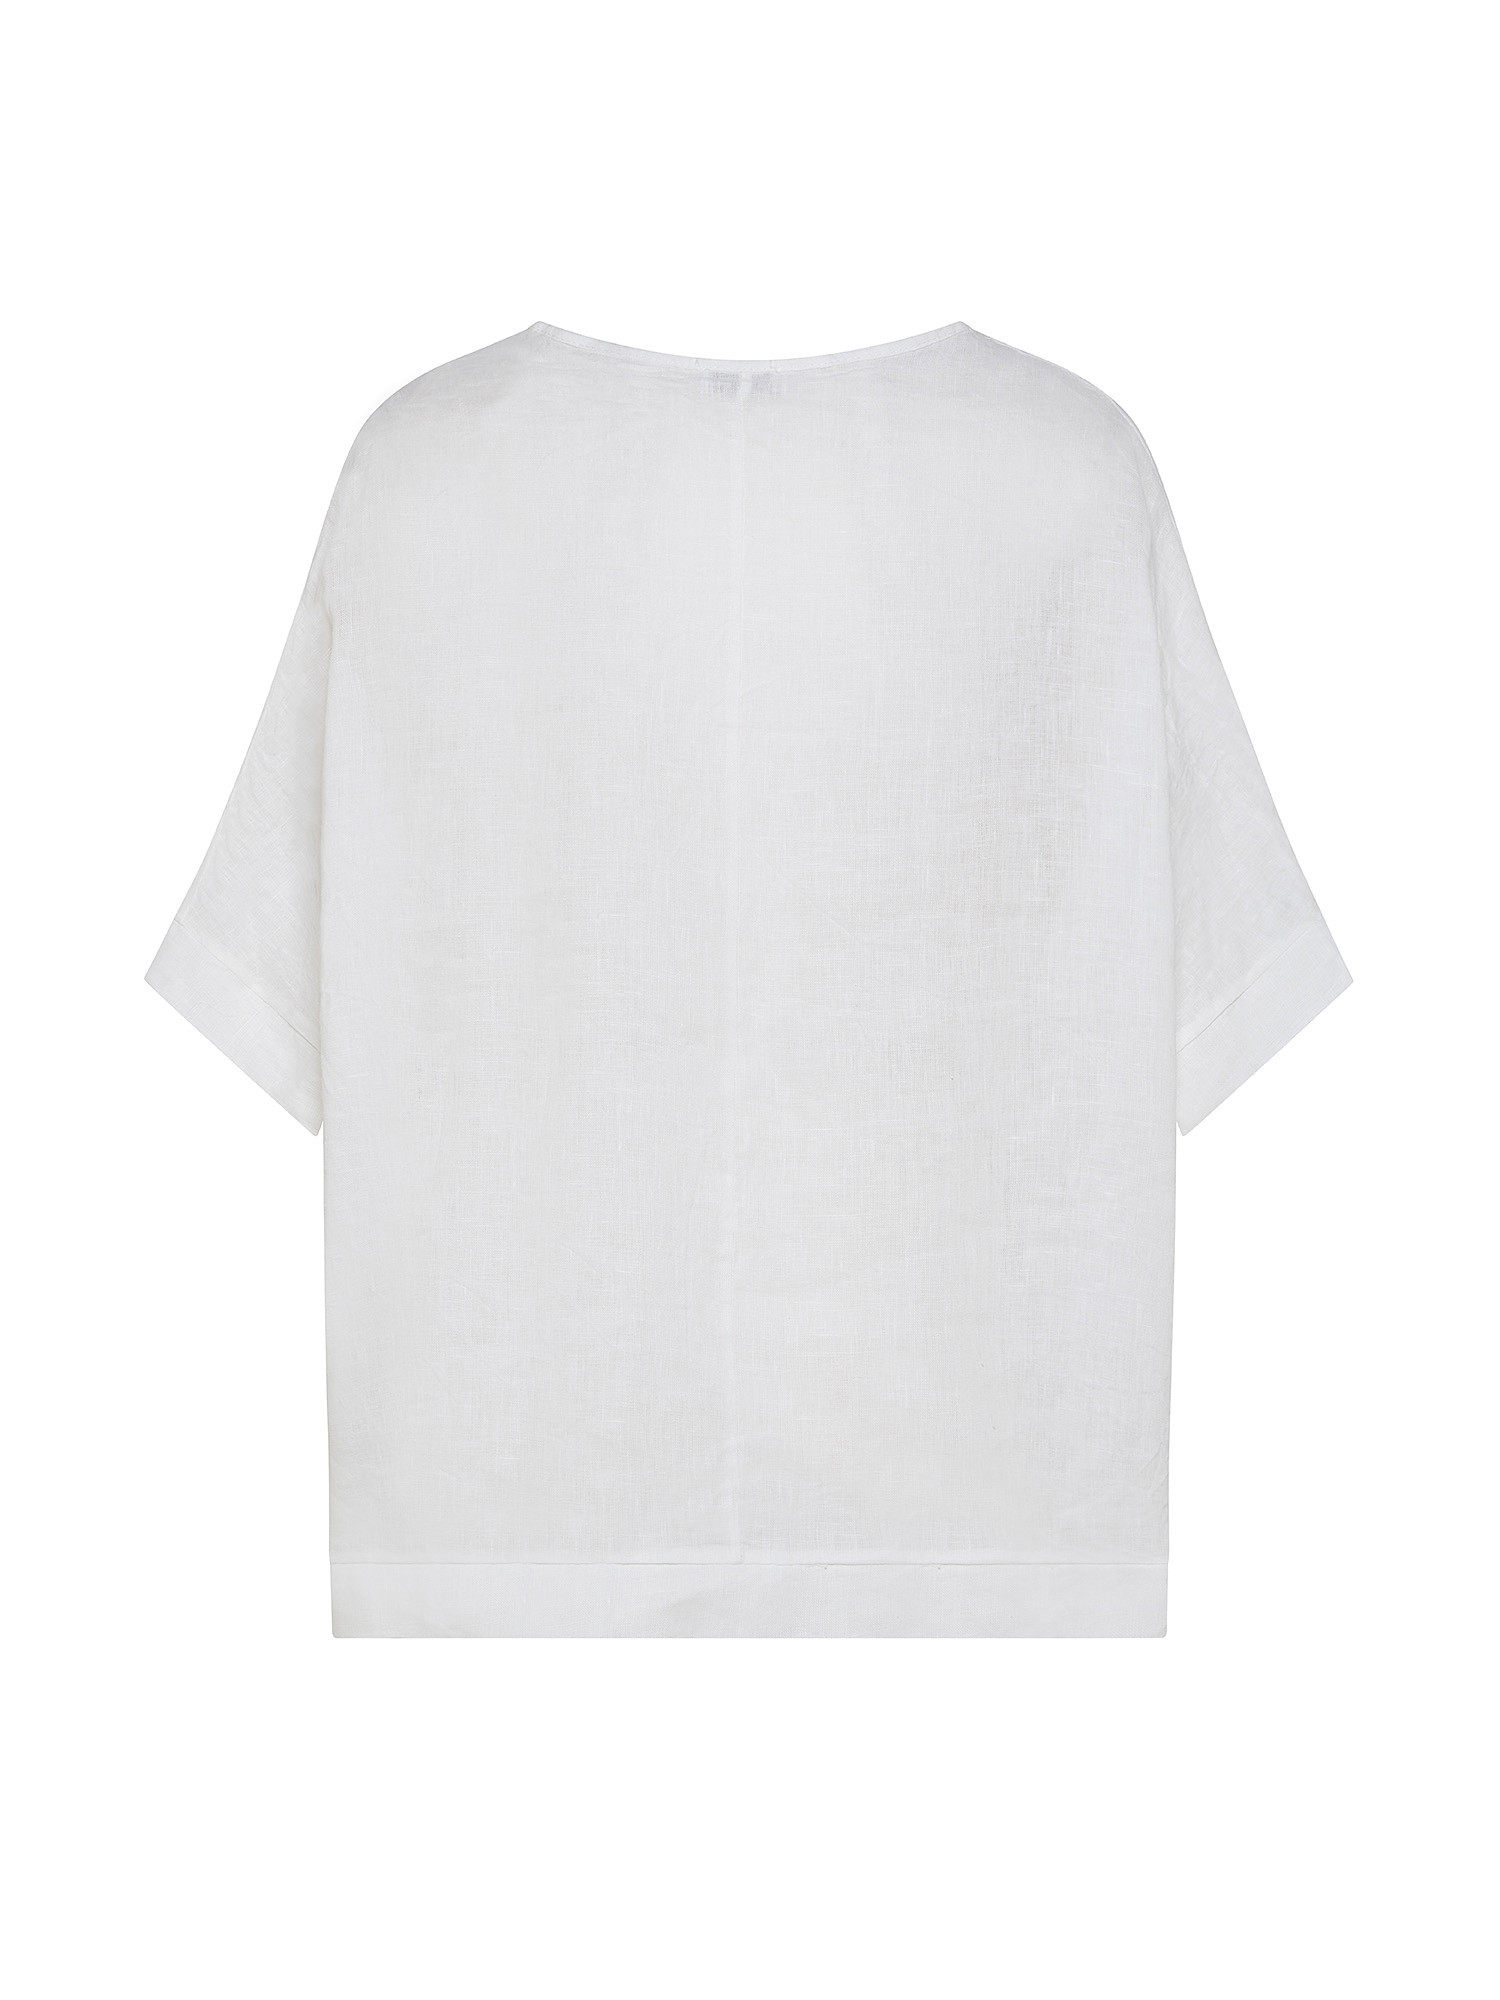 Blusa in puro lino tinta unita, Bianco, large image number 1